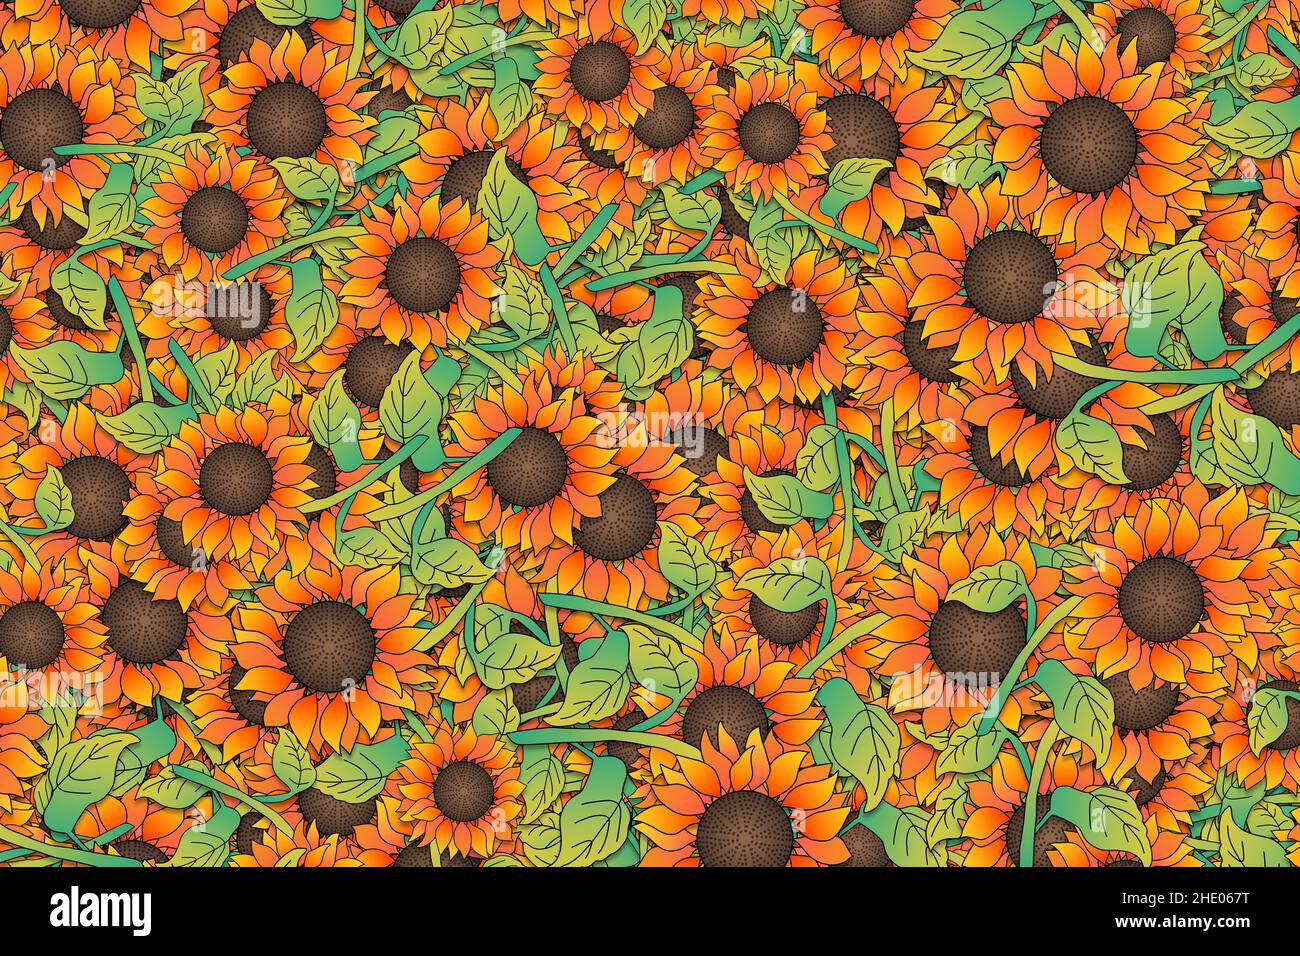 Hintergrunddarstellung von bunten gelben und orangen Sonnenblumen. Stockfoto